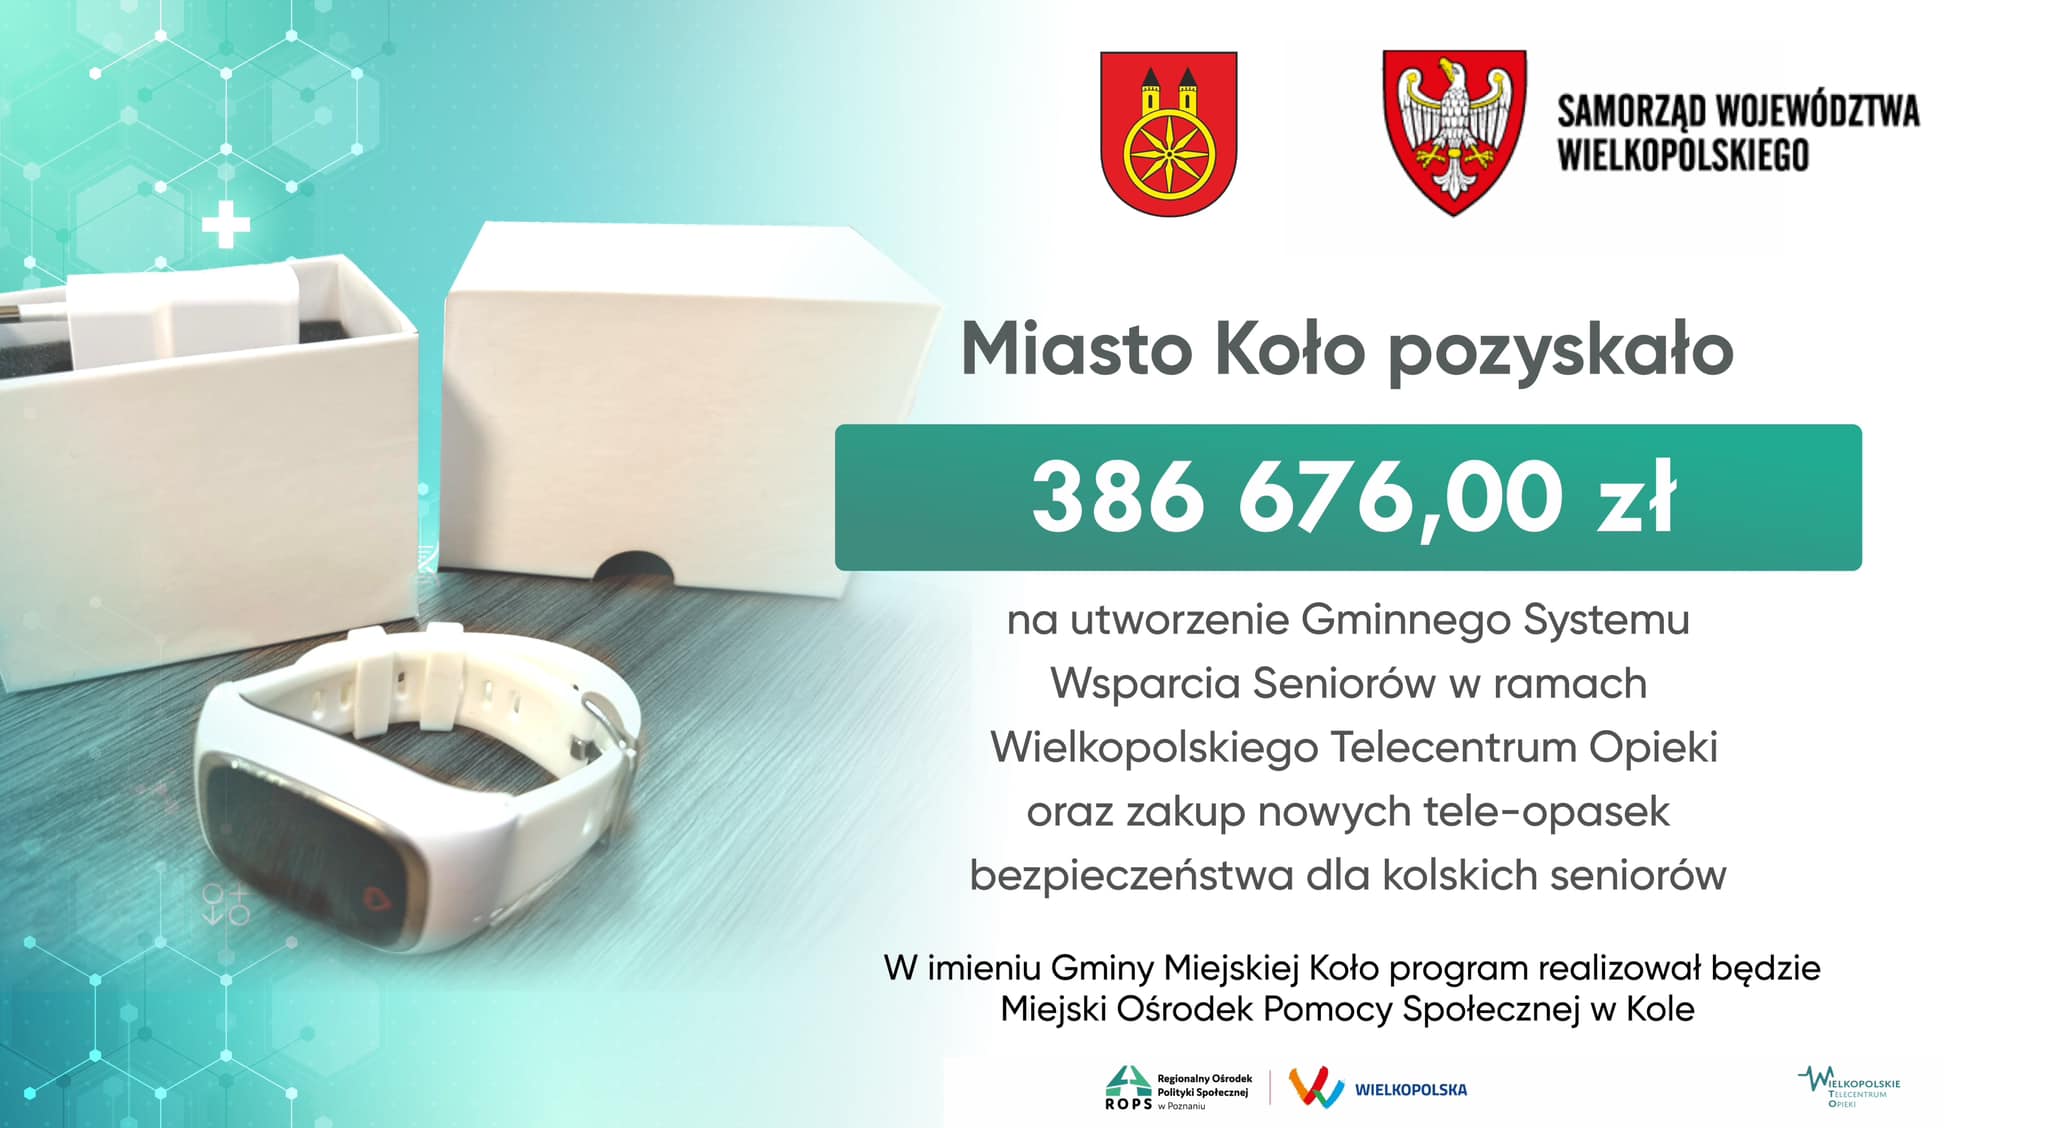 Zdjęcie przedstawia plakat informujący o przyznaniu miastu Koło dofinansowania w wysokości 386 676,00 zł na utworzenie Gminnego Systemu Wsparcia Seniorów w ramach Wielkopolskiego Telecentrum Opieki oraz zakup nowych tele-opasek bezpieczeństwa.